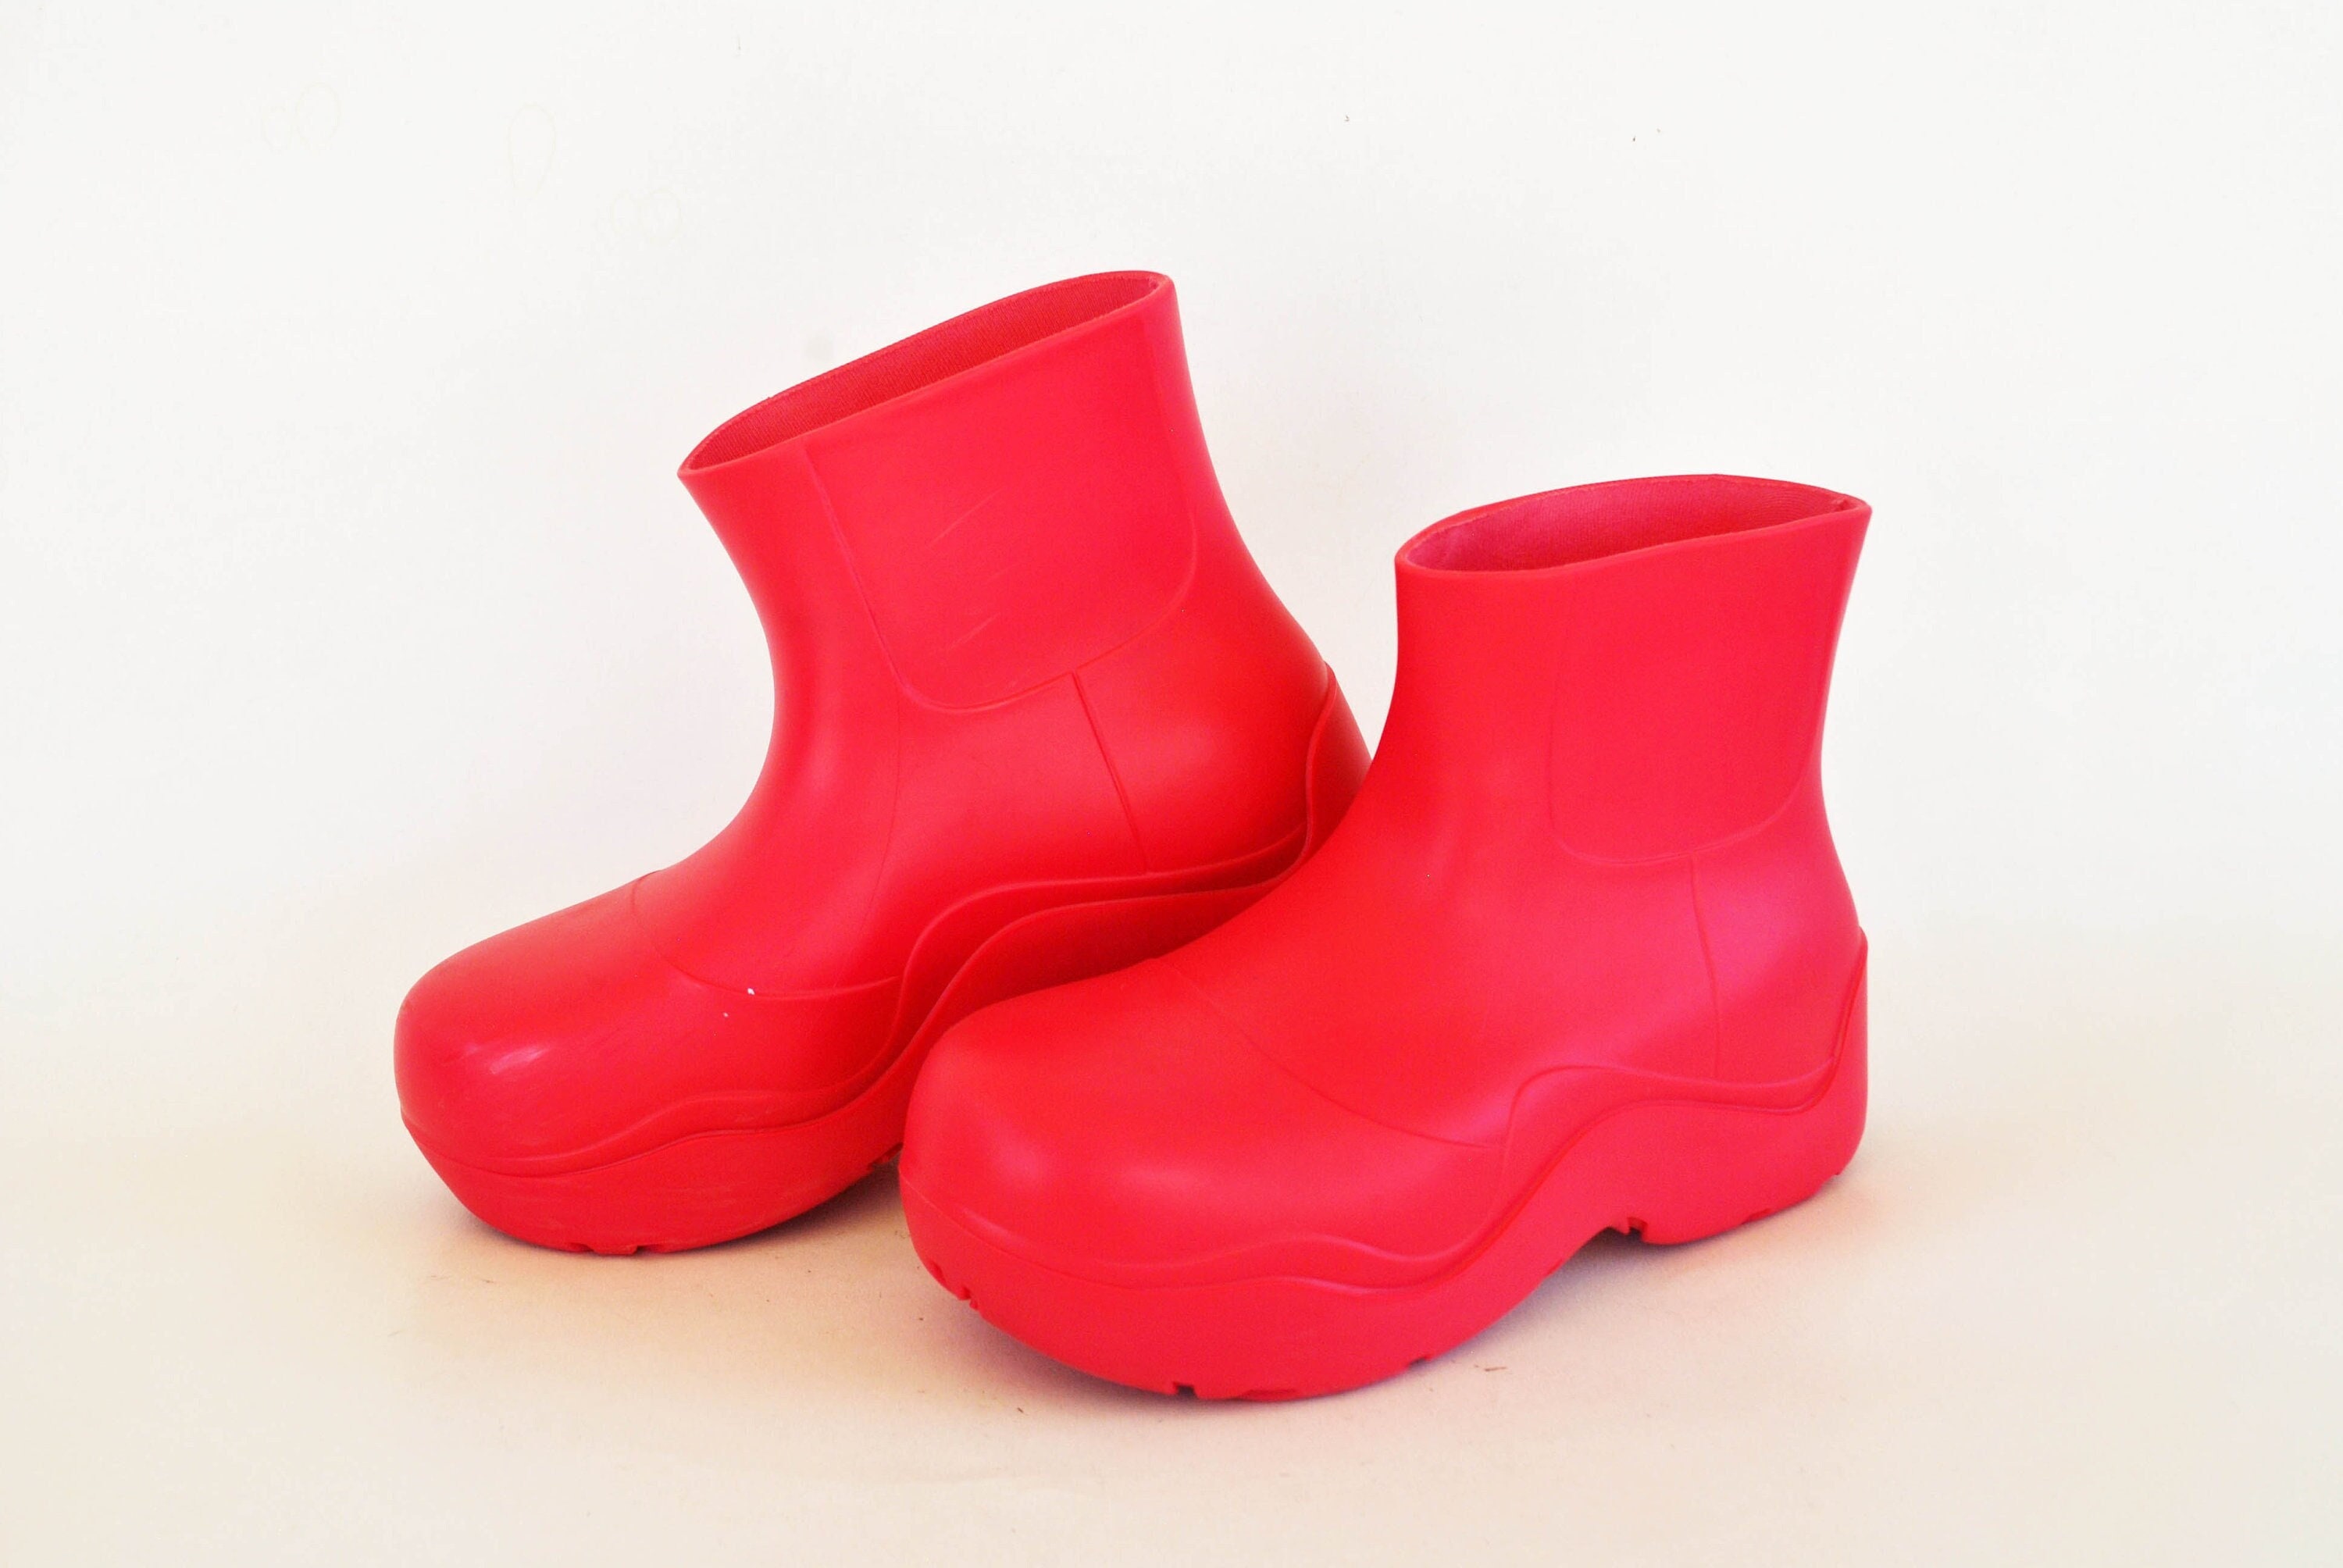 Louis Vuitton LV Monogram Rubber Rain Boots Shoes Women EUR 37 23.5cm US6.5  Pink